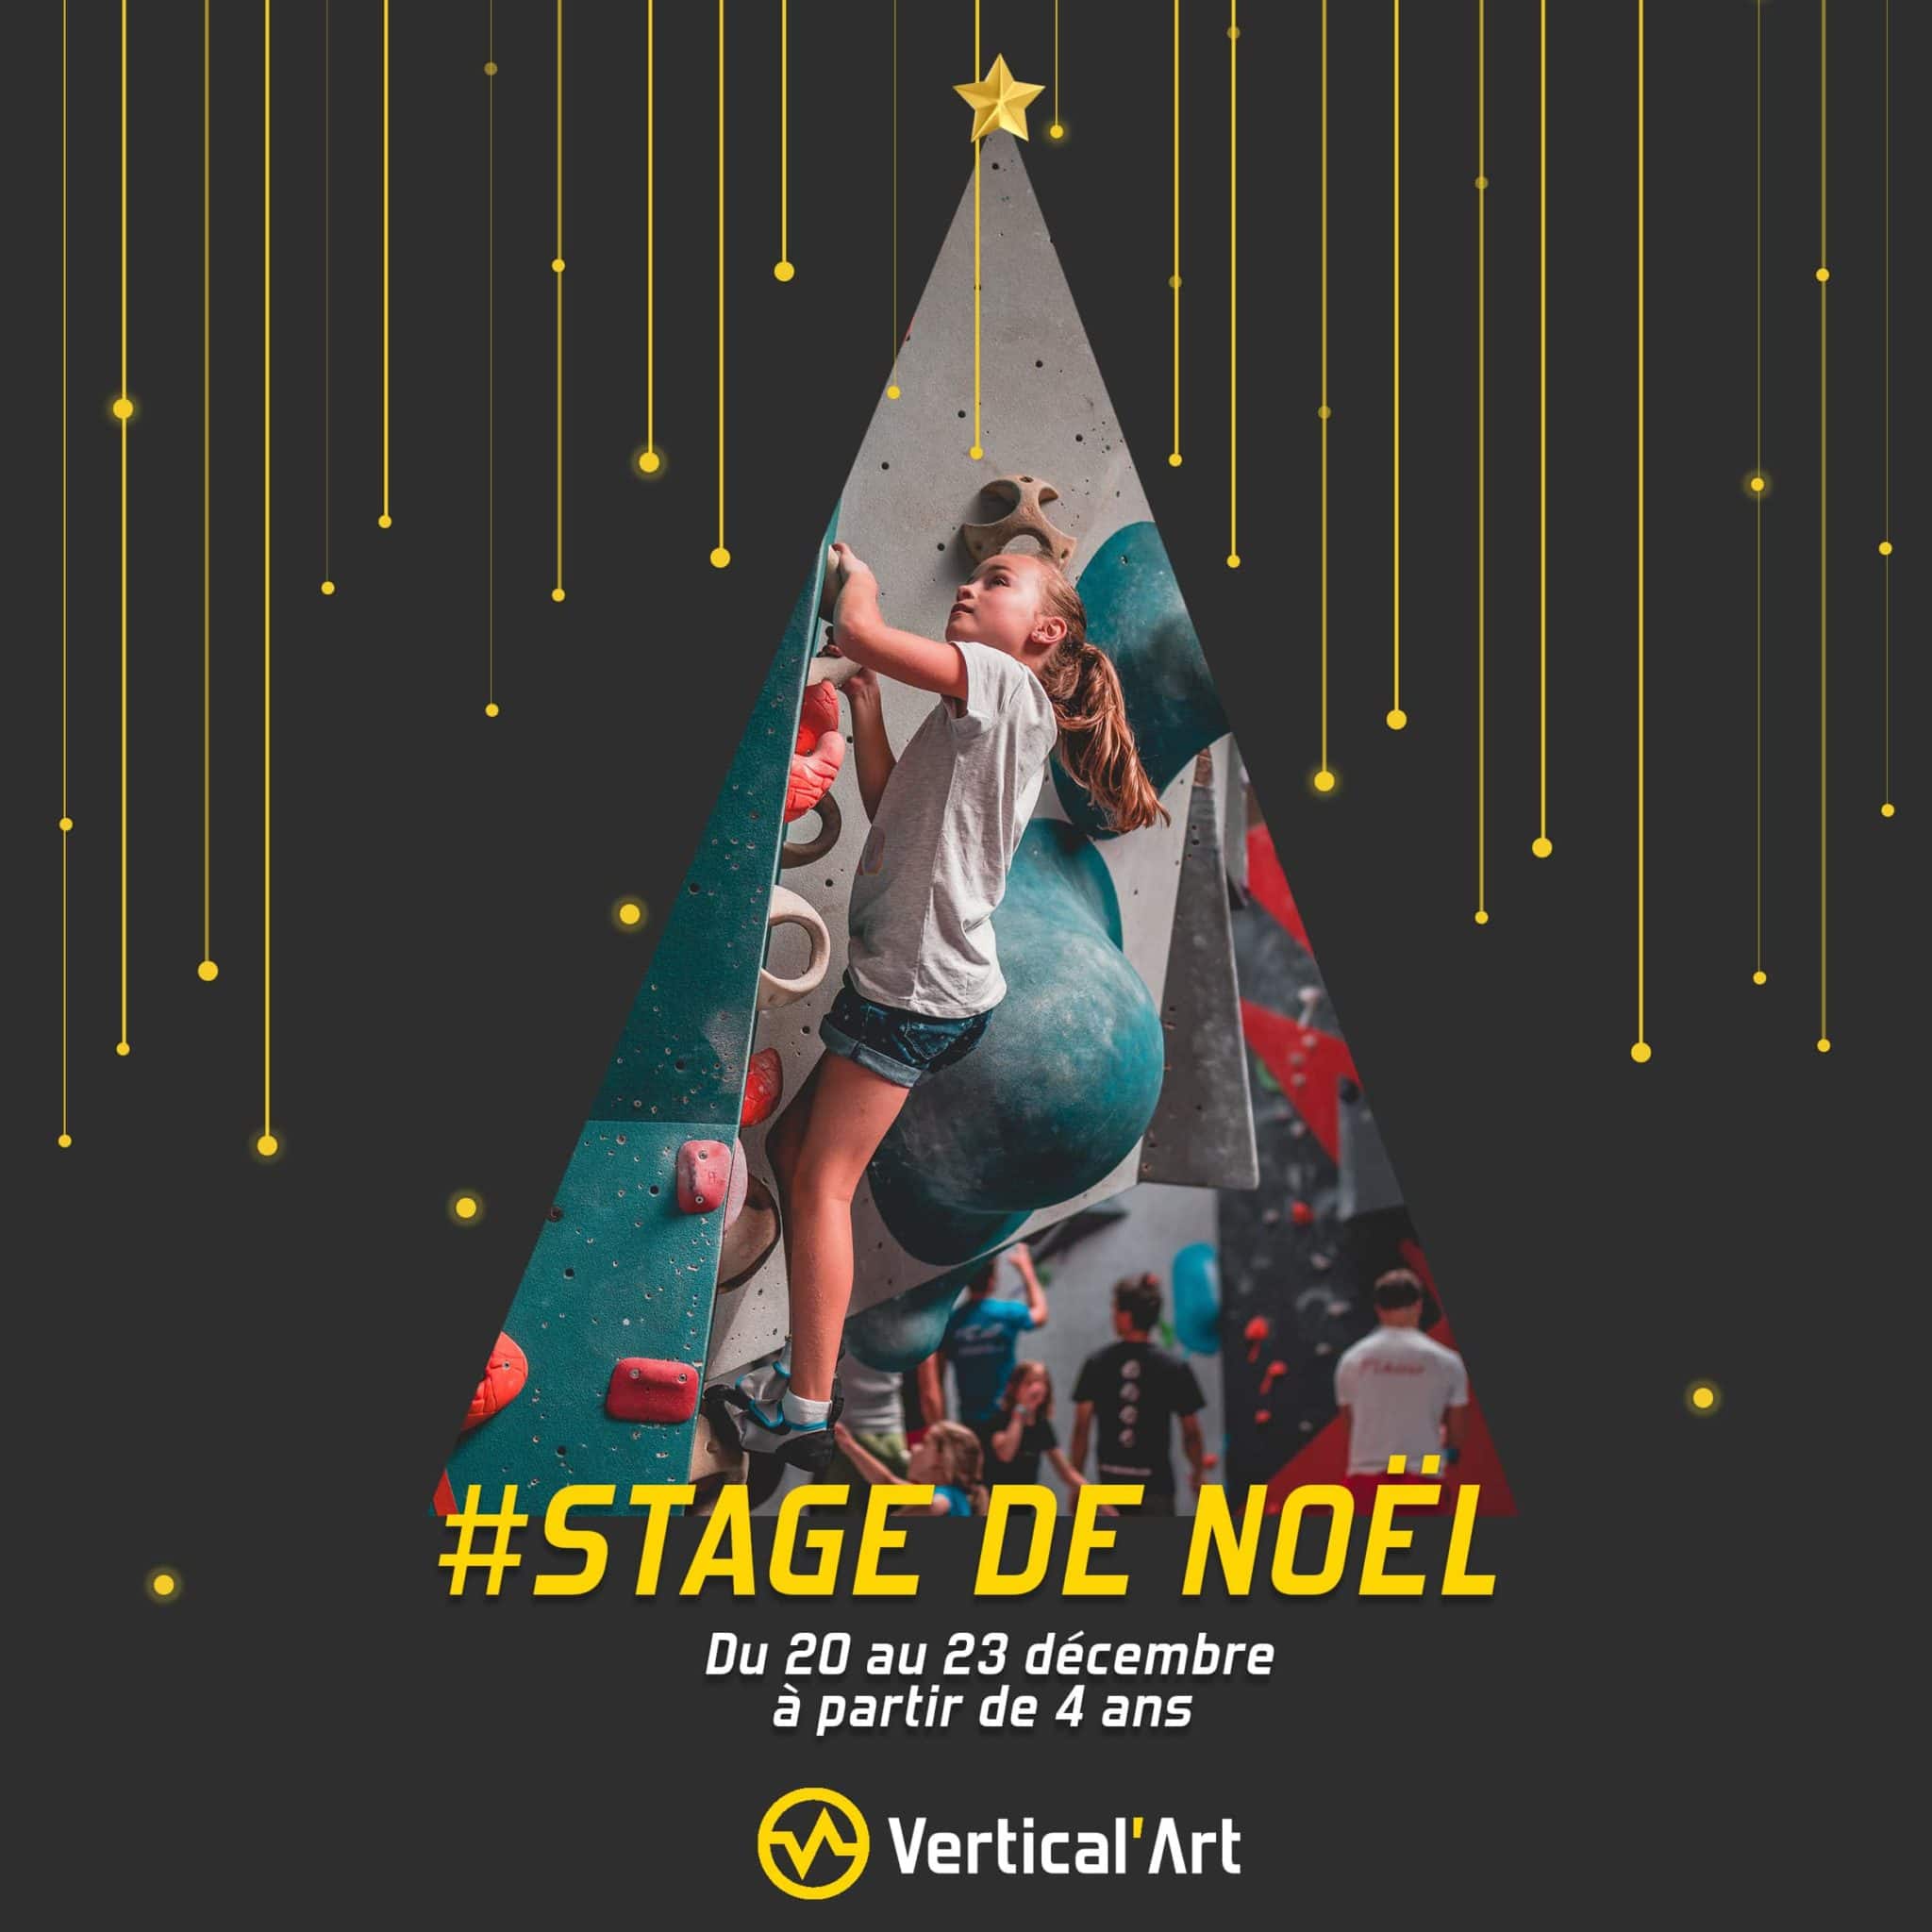 Stage enfants Noël 2021 à Vertical'Art Nantes, du 20 au 23 décembre à partir de 4 ans